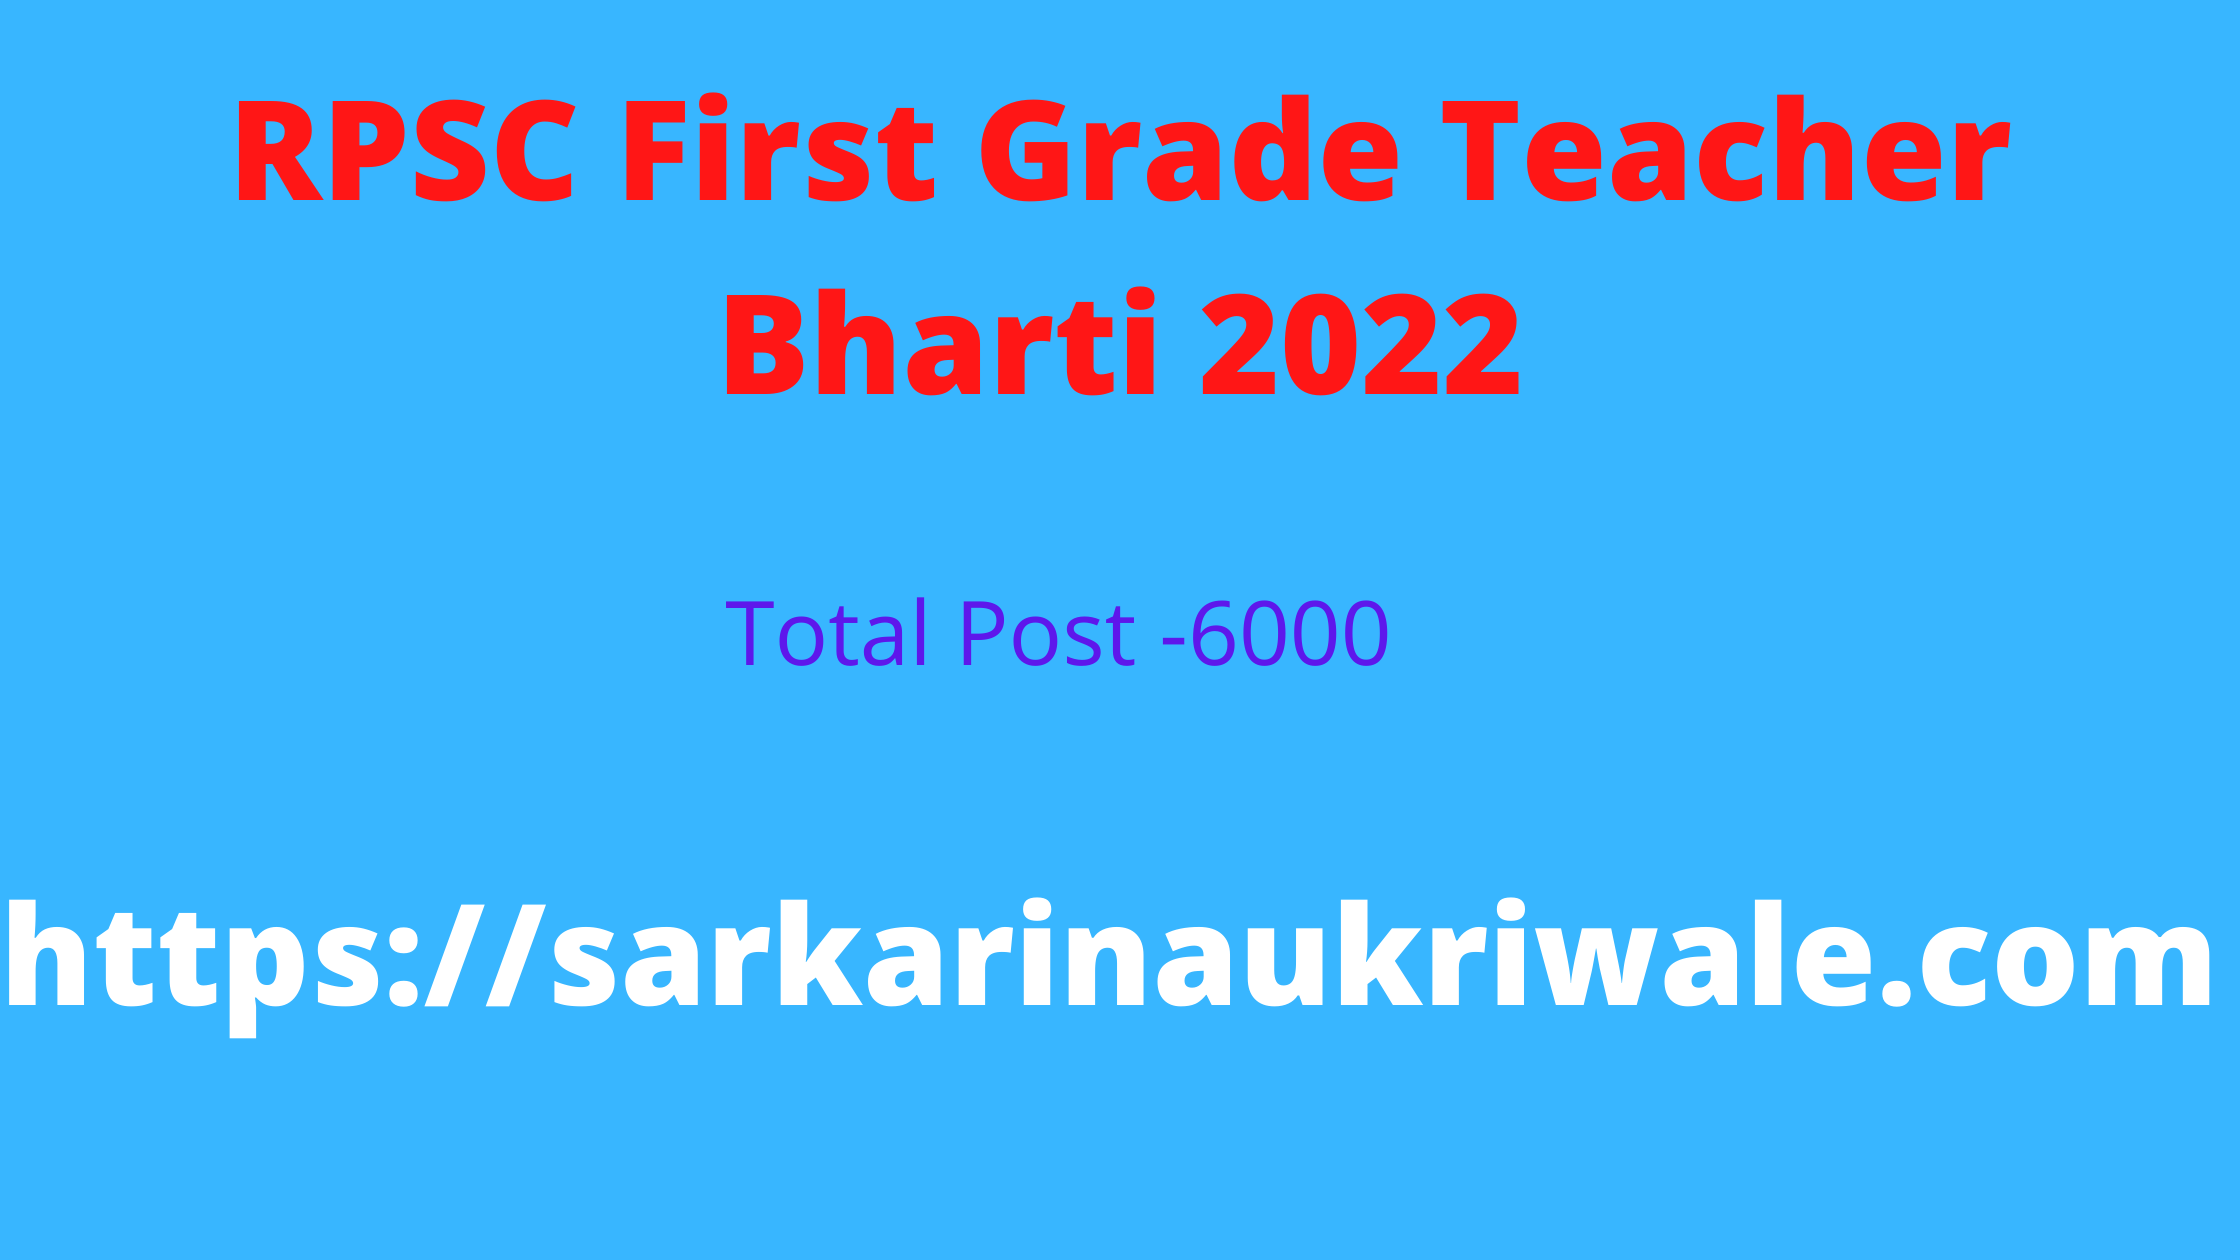 RPSC First Grade Teacher Bharti 2022